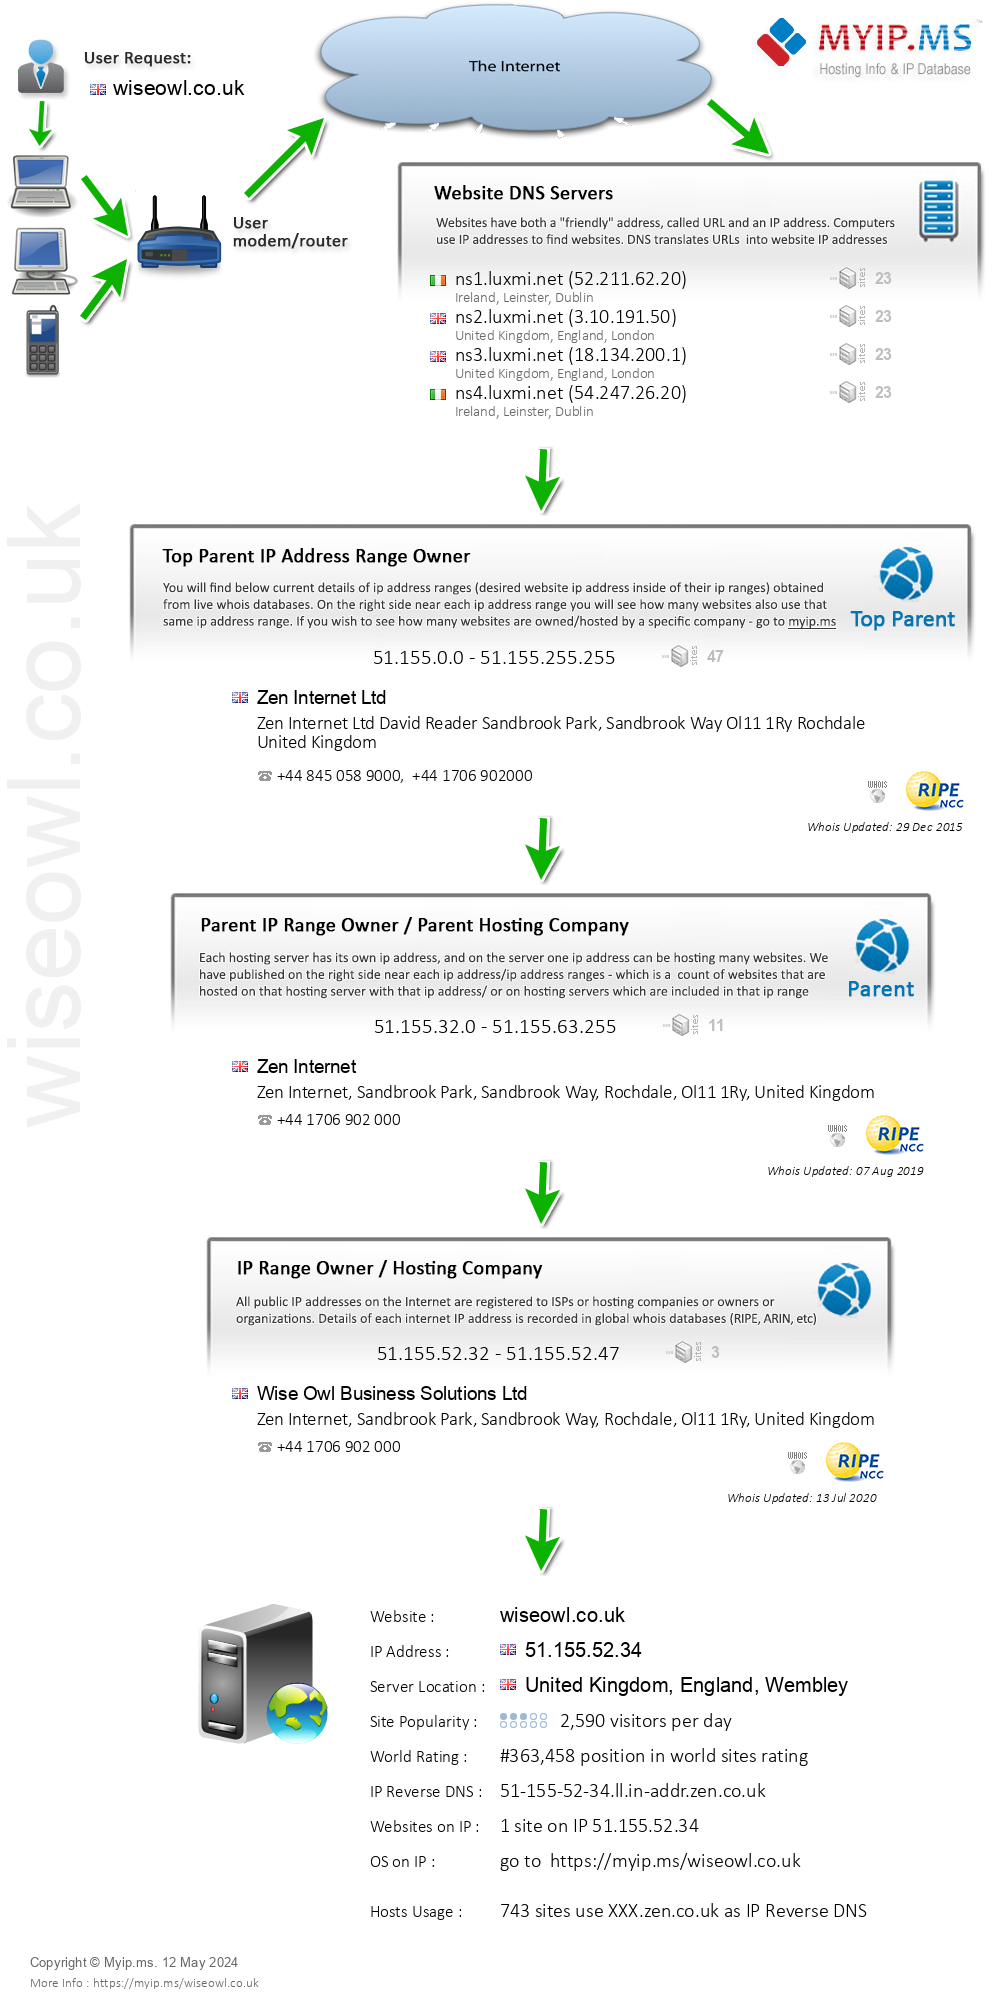 Wiseowl.co.uk - Website Hosting Visual IP Diagram